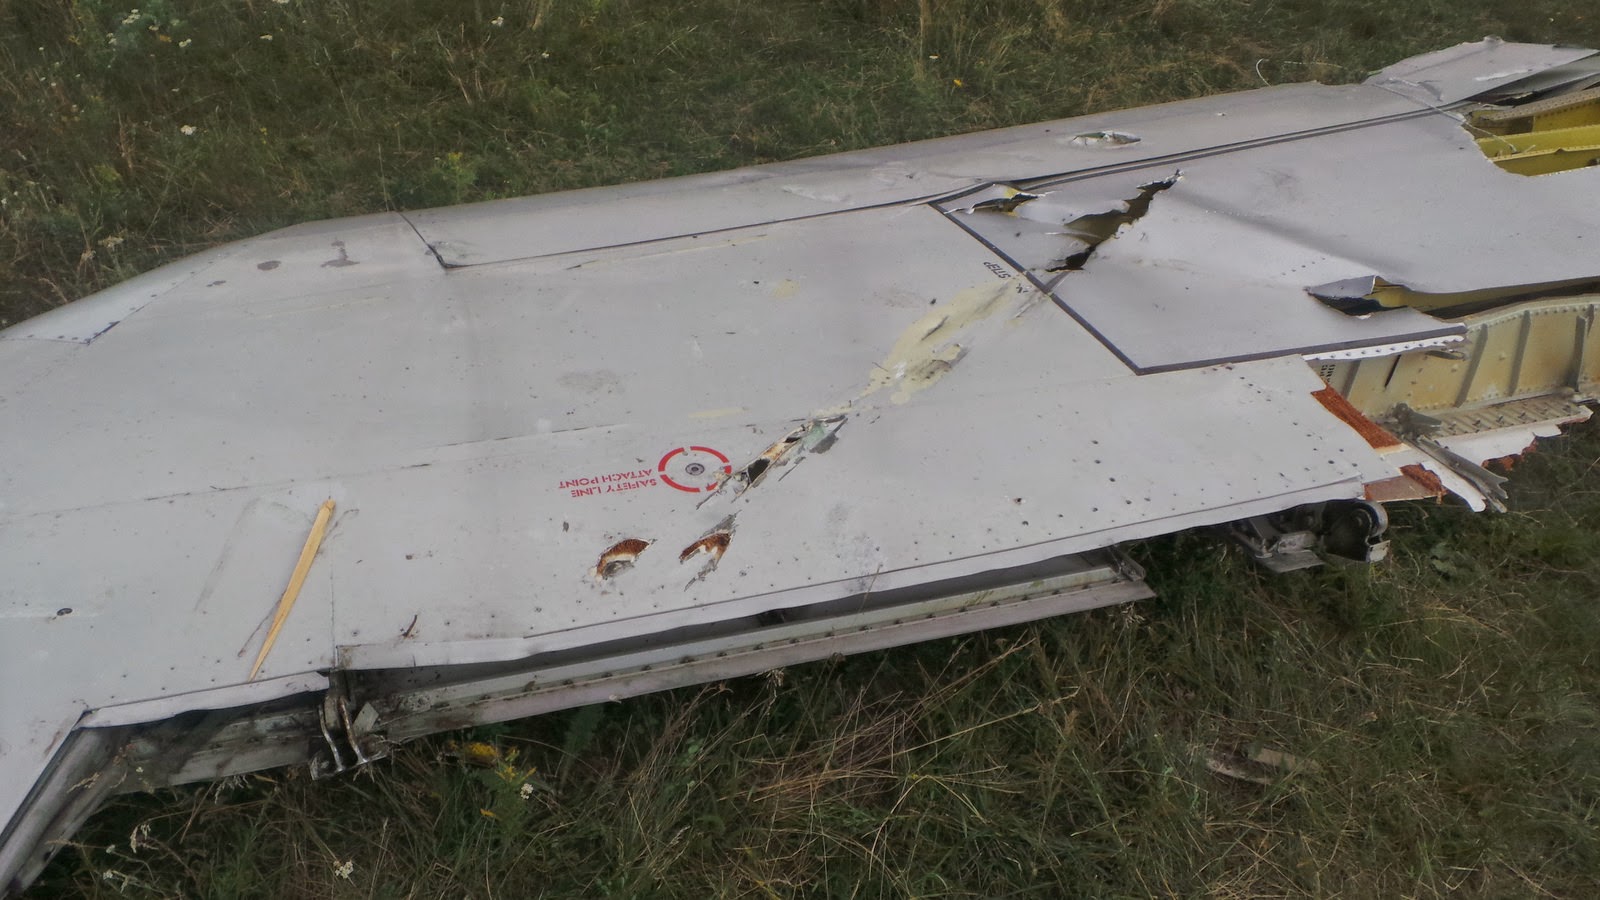 SU-25-Impactos-ametralladora--MH17-MEDIASET-España-cuatro-noticias-borbones-BANDERAFALSA-OTAN-Terrorismo-Rebeldes-misiles-BUK-Ucrania-kiev-avion-nuevordenmundial-nwo-MH17-amenazado-autoatentado490.jpg